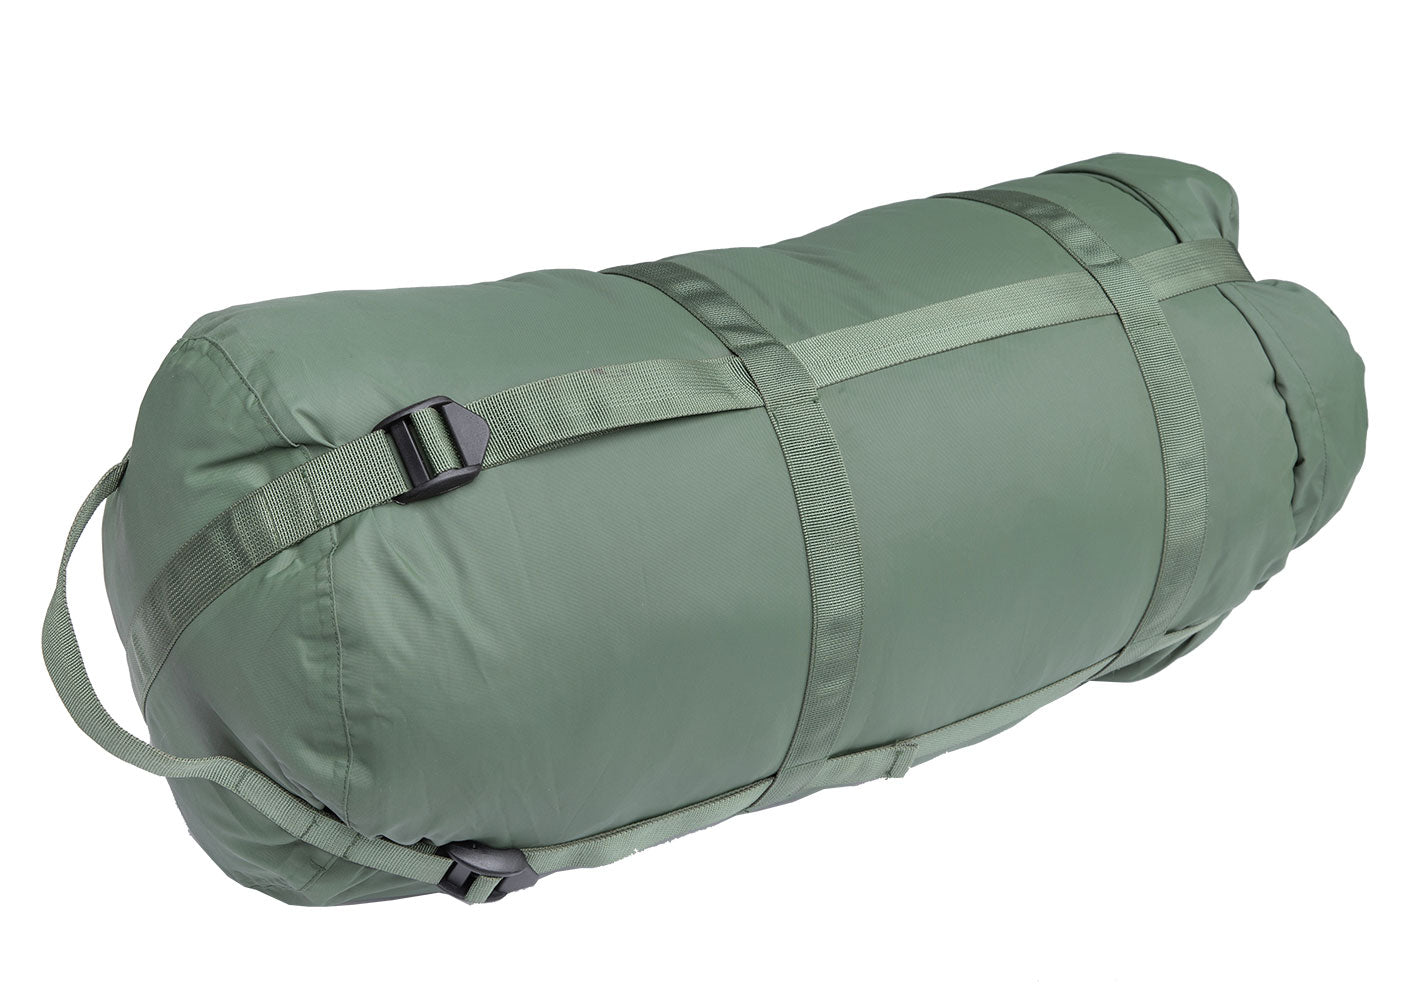 14 BEST Backpacking Sleeping Bags (2023 Roundup)